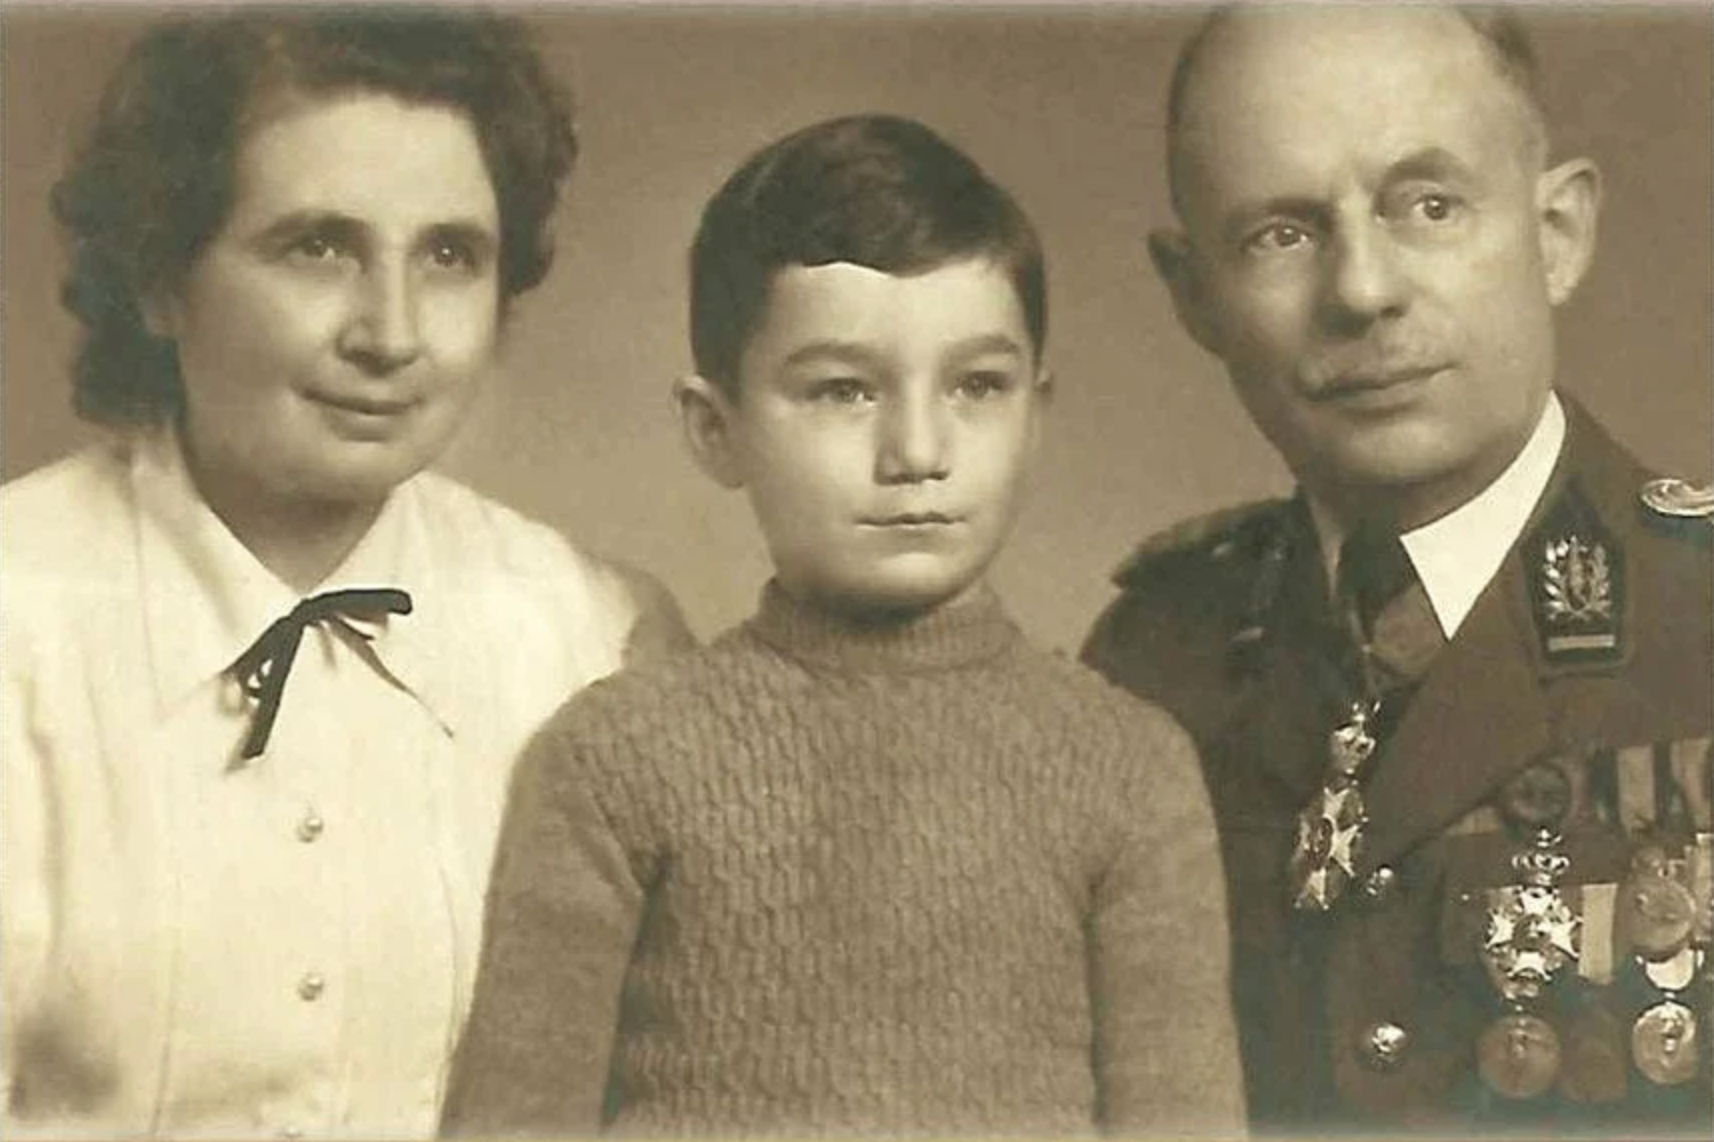 El niño judío que sobrevivió al holocausto